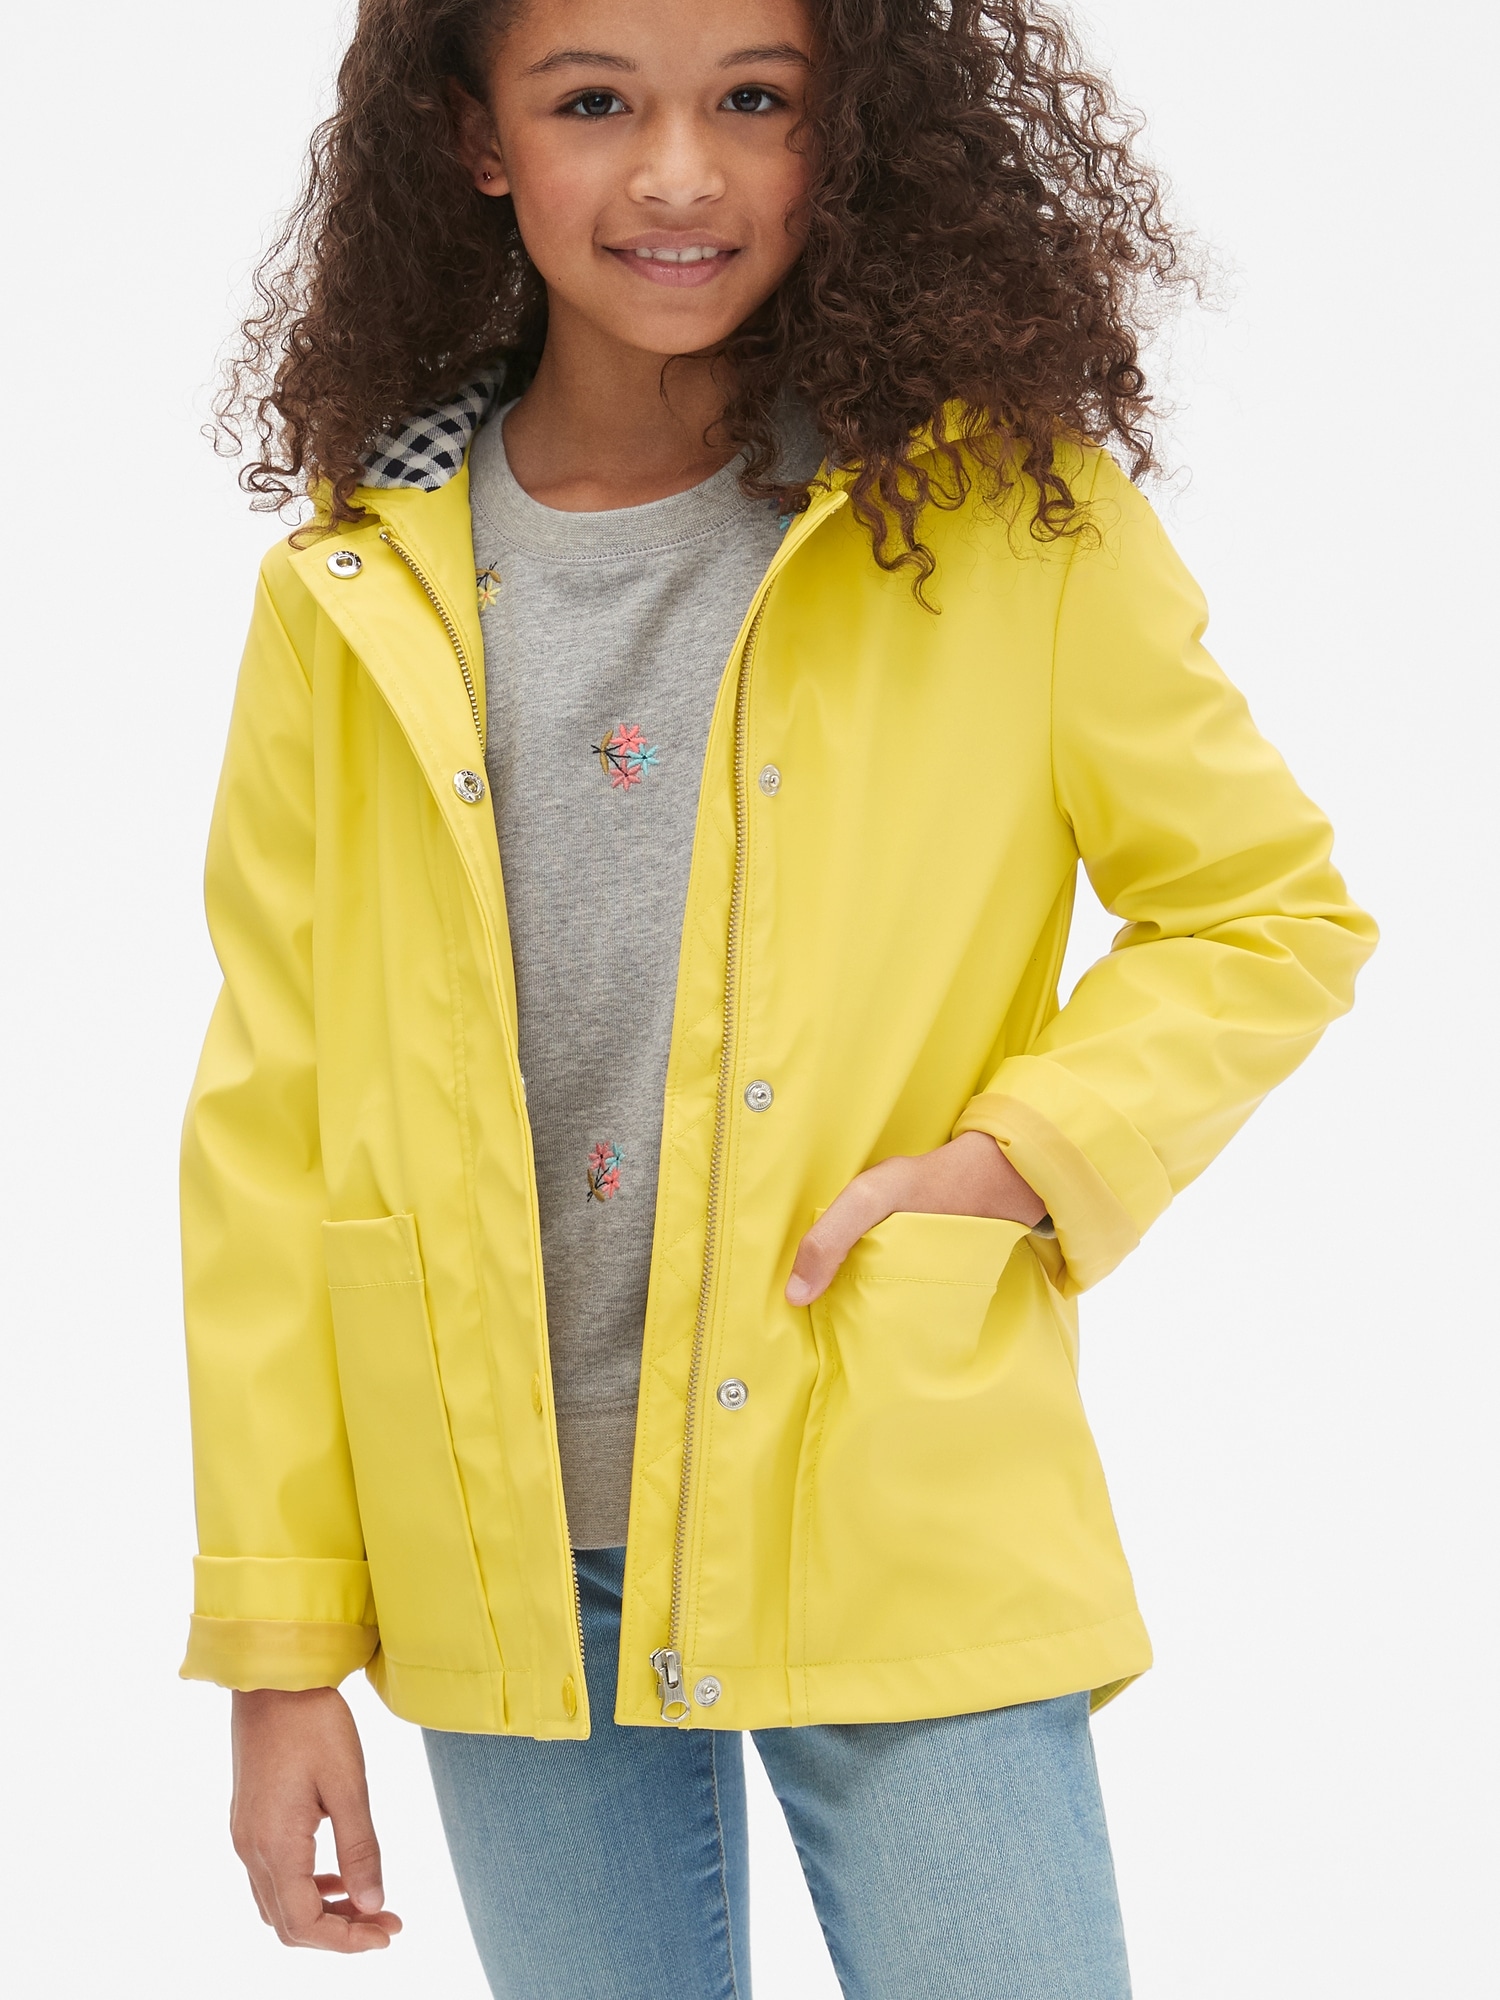  LANSHULAN Women Yellow Raincoat Jacket,Unisex Kids